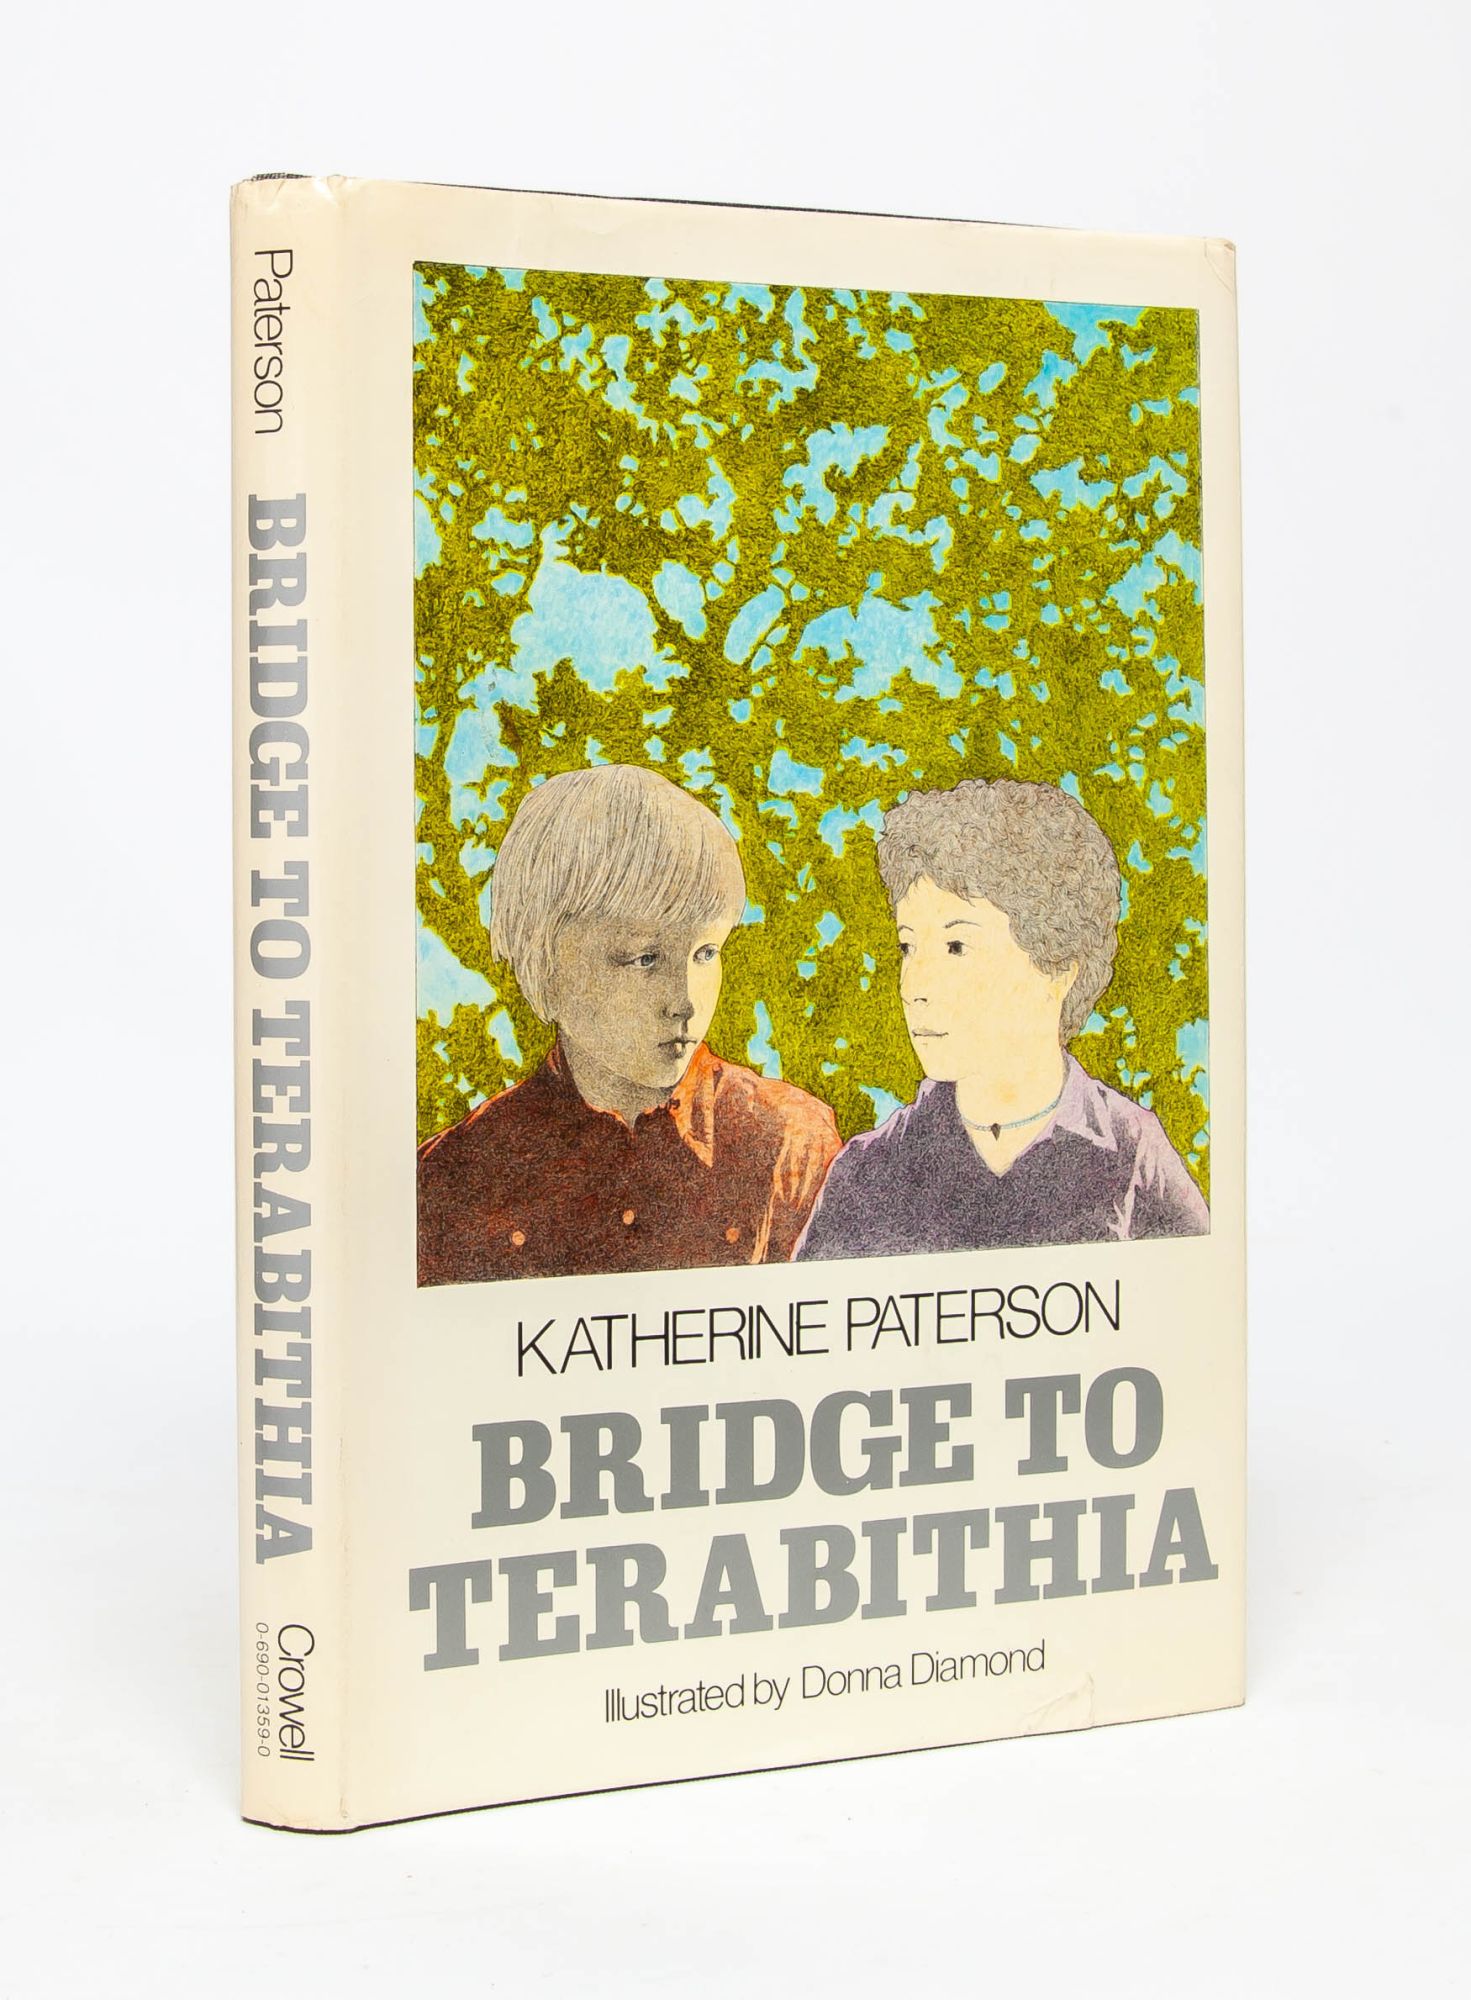 (Item #5534) Bridge to Terabithia. Katherine Paterson.